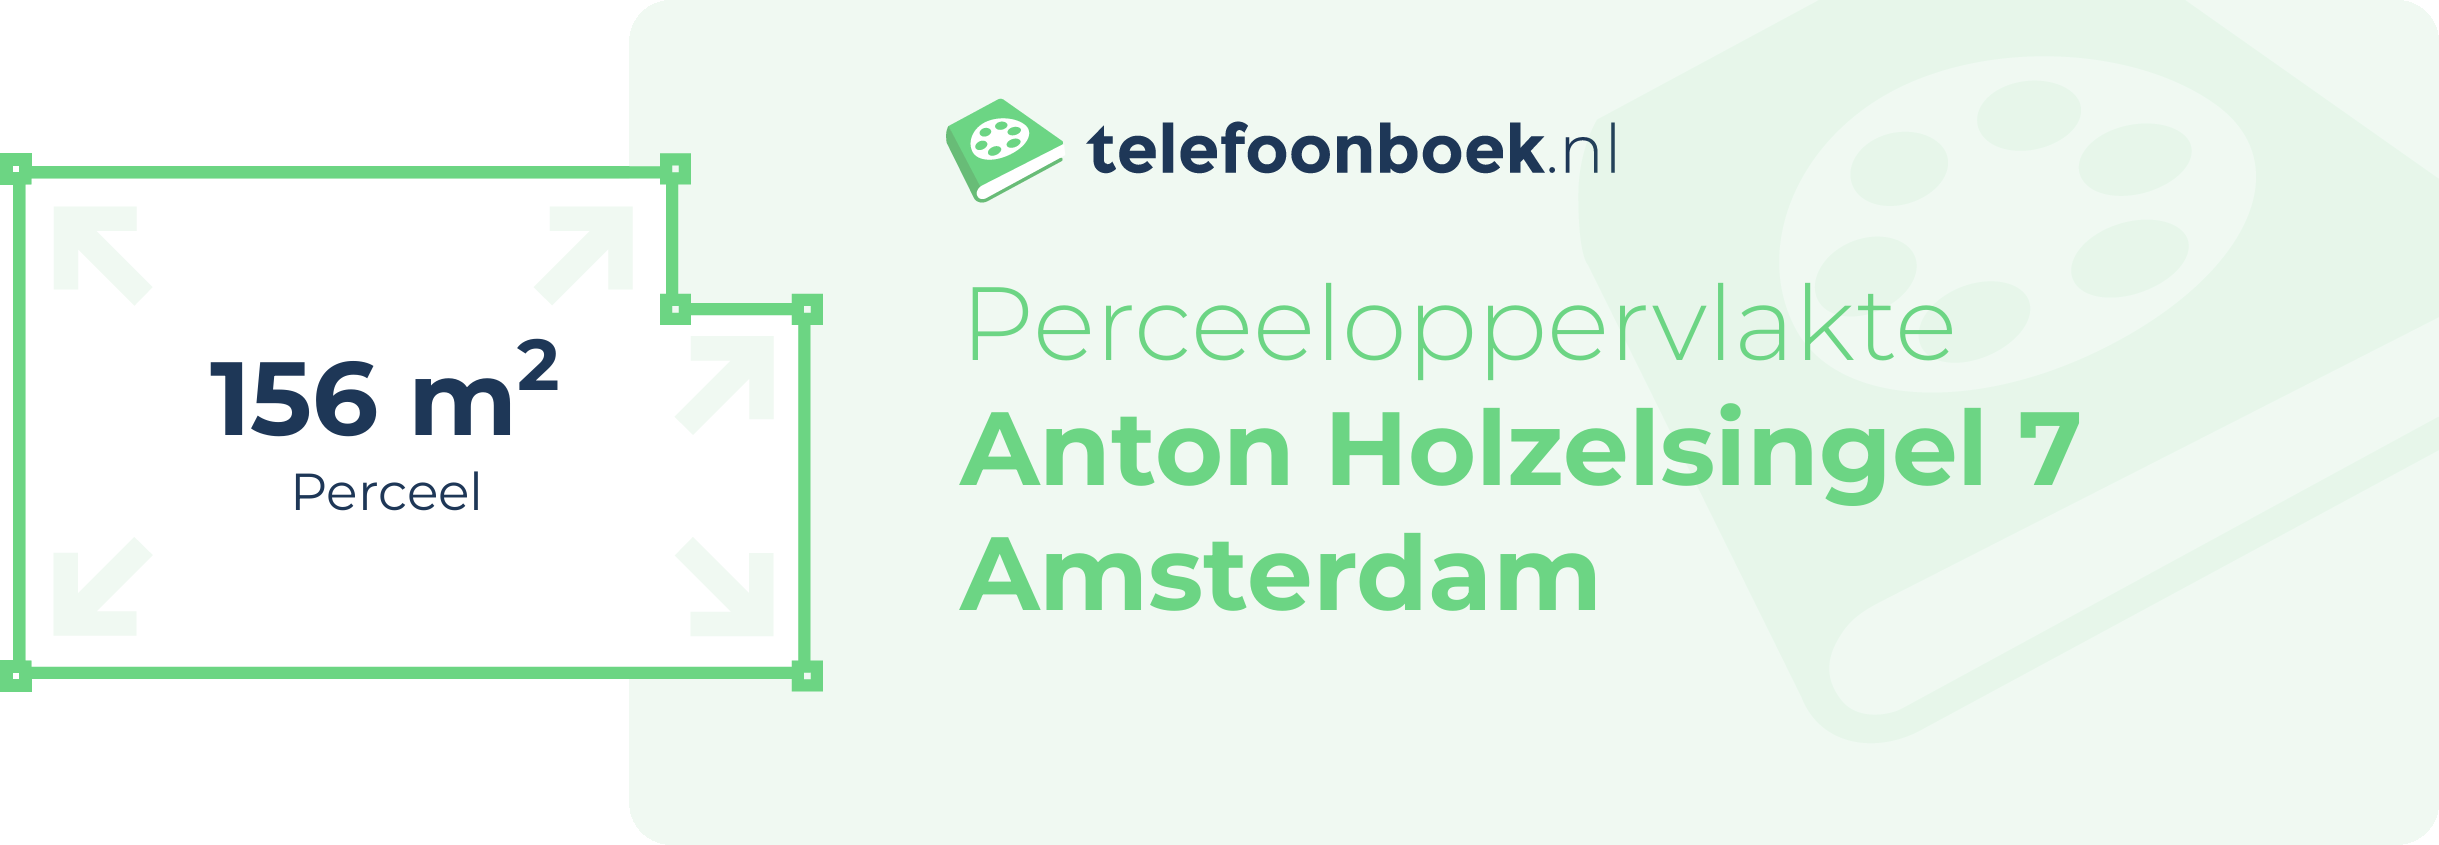 Perceeloppervlakte Anton Holzelsingel 7 Amsterdam